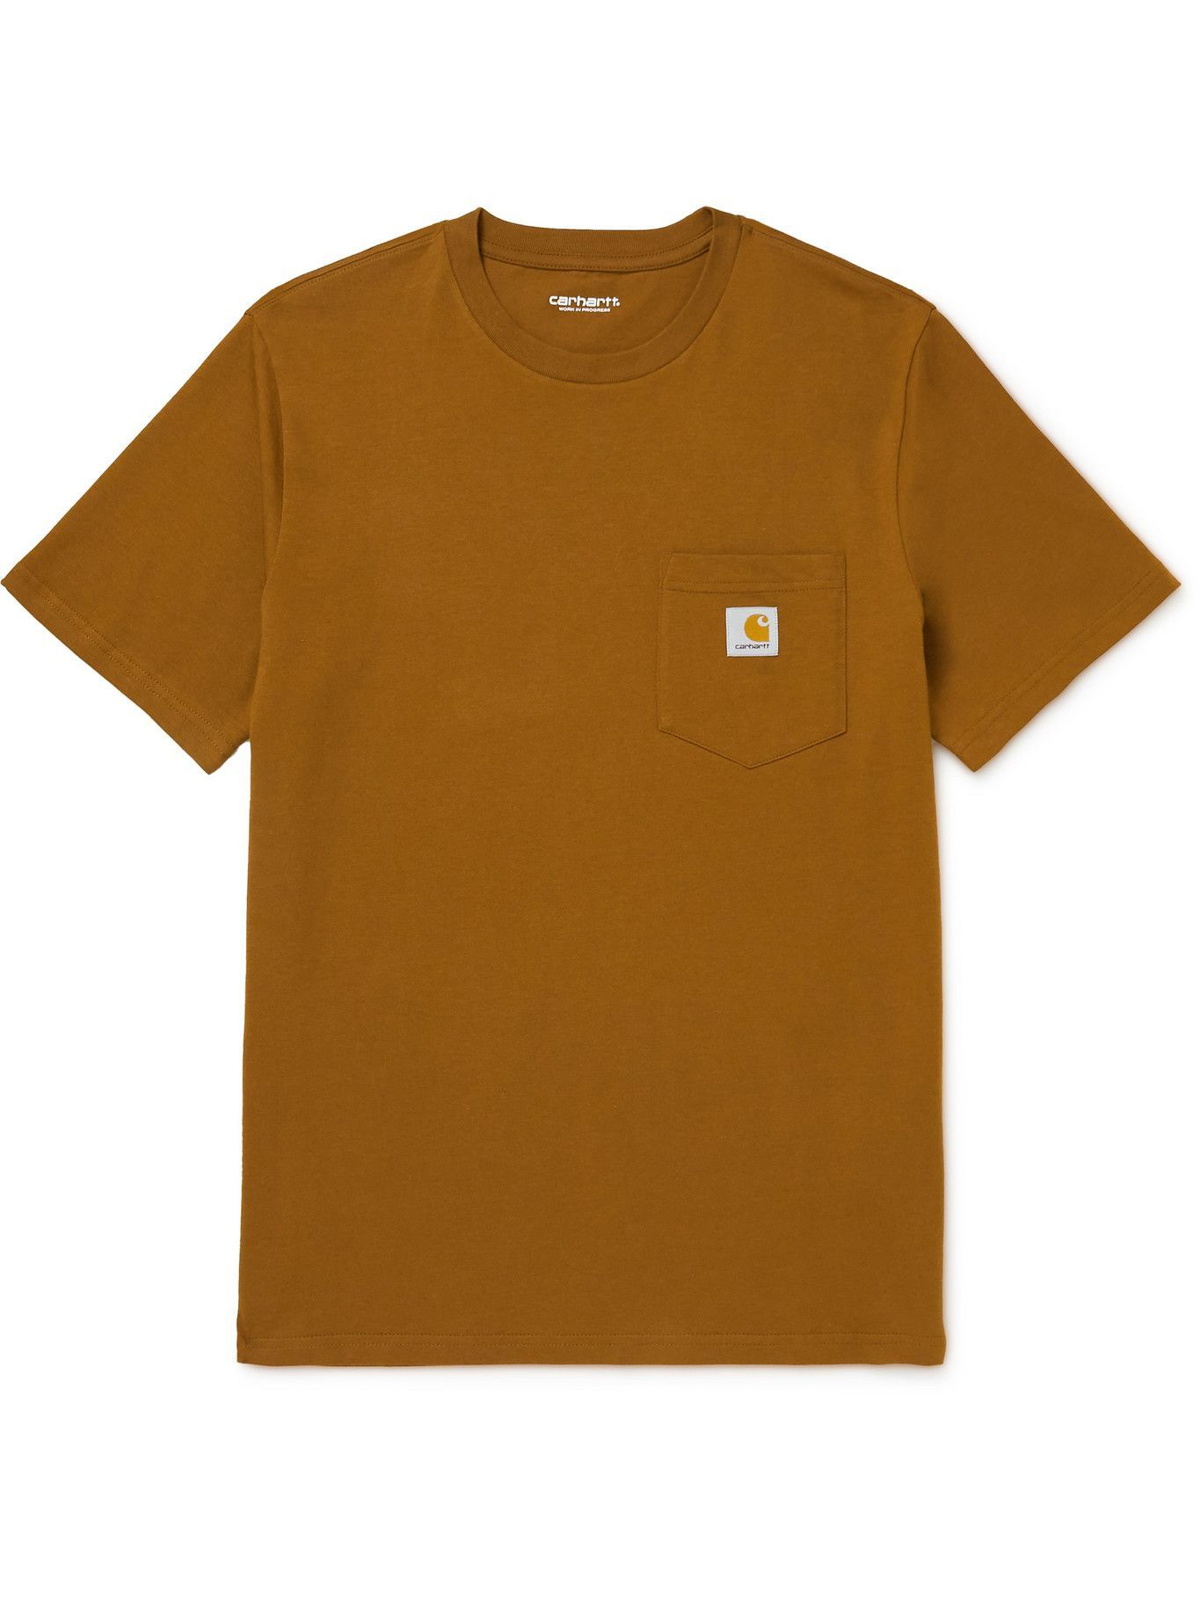 Carhartt WIP - Logo-Appliquéd Cotton-Jersey T-Shirt - Brown Carhartt WIP